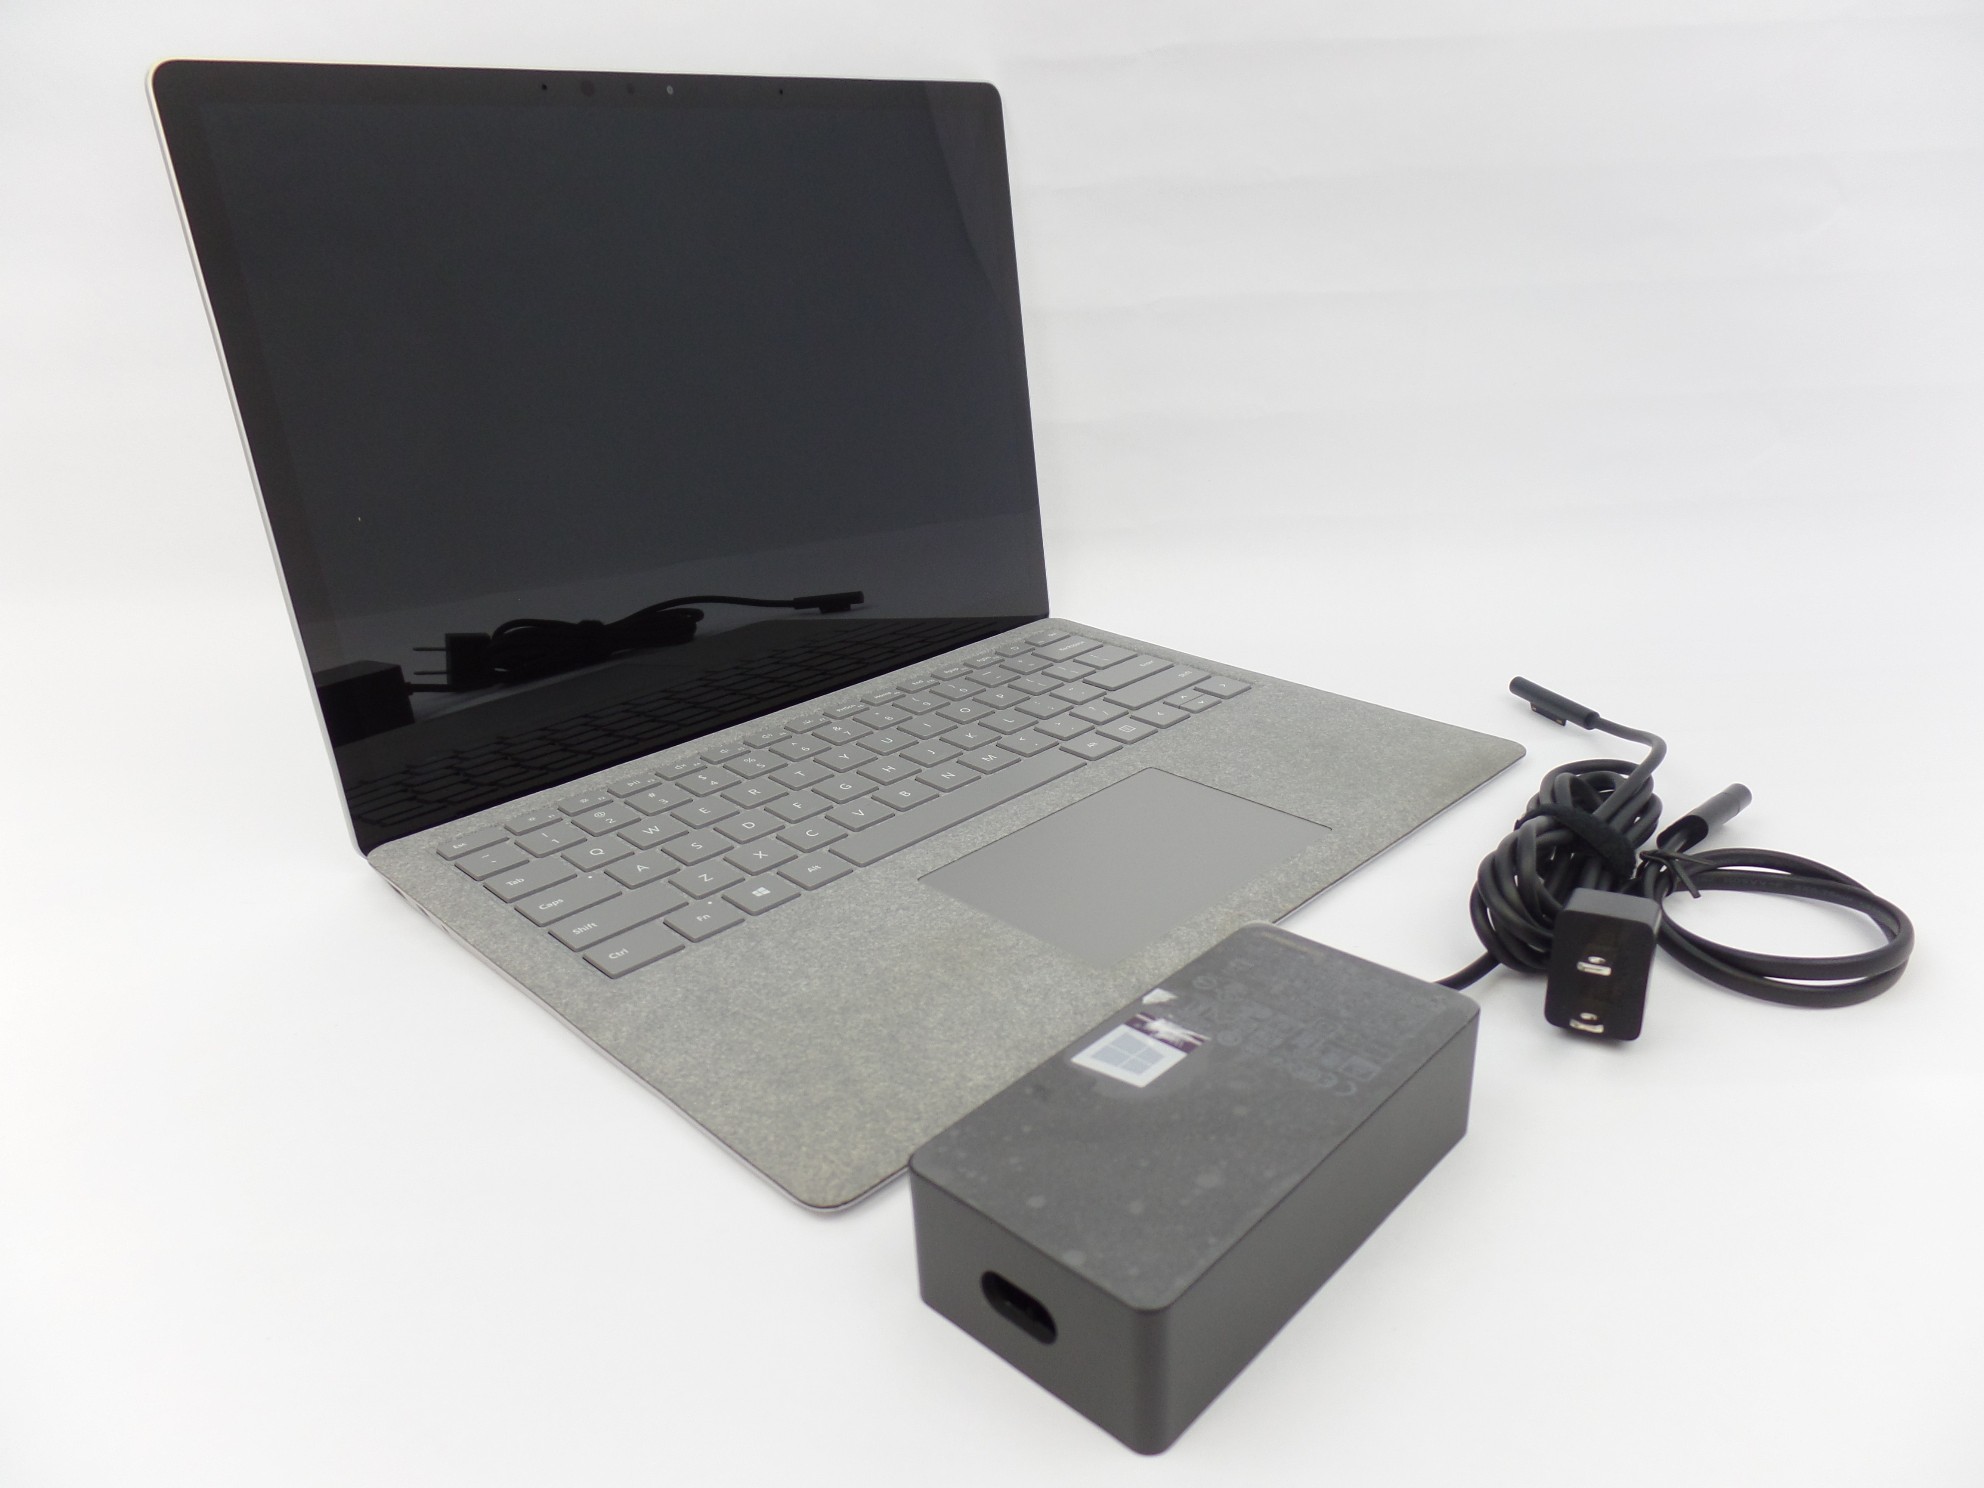 Microsoft Surface Laptop 1769 13.5" Touch i7-7660U 2.5Hz 8GB 256GB Iris W10 Grey